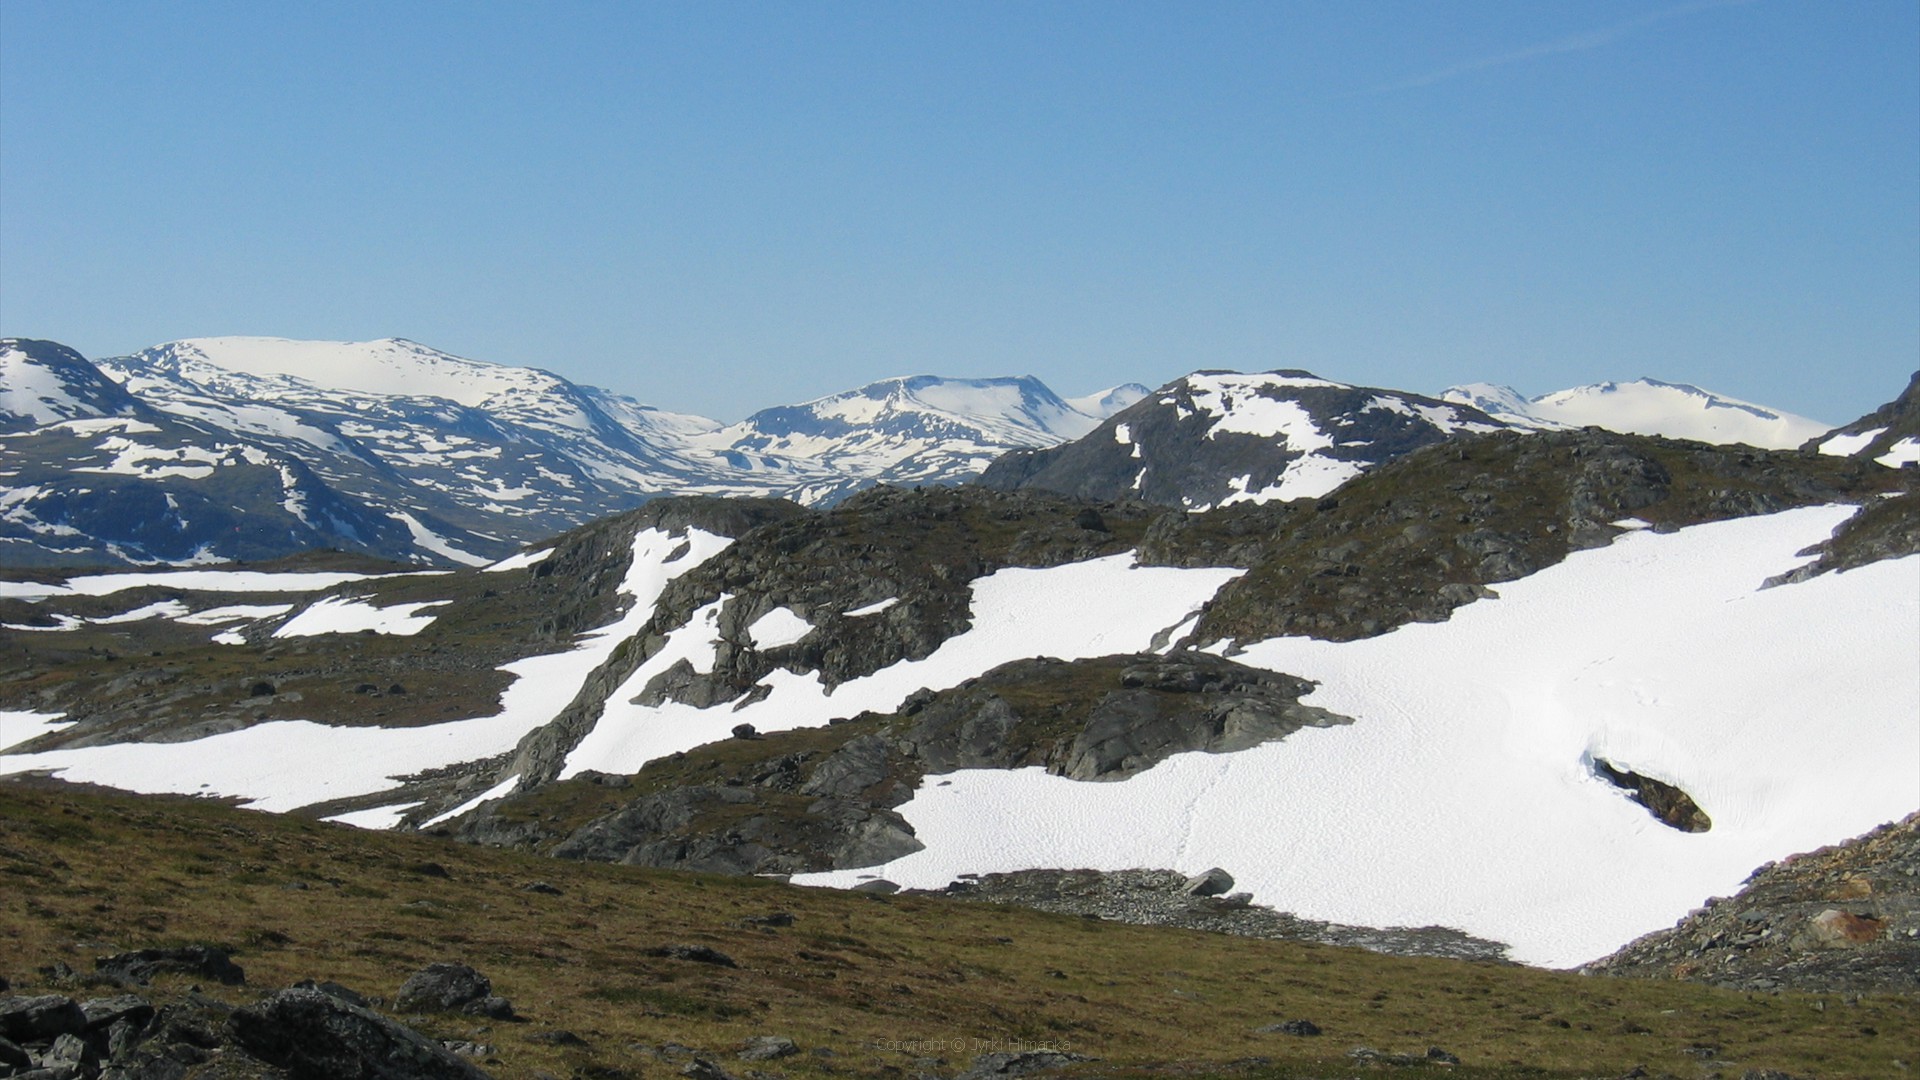 Vasemmalla Rivgojiehkki, jäätikkö Norjan ja Ruotsin rajalla.Siitä oikealle Caihnavaggi, jonka läpi tulimme